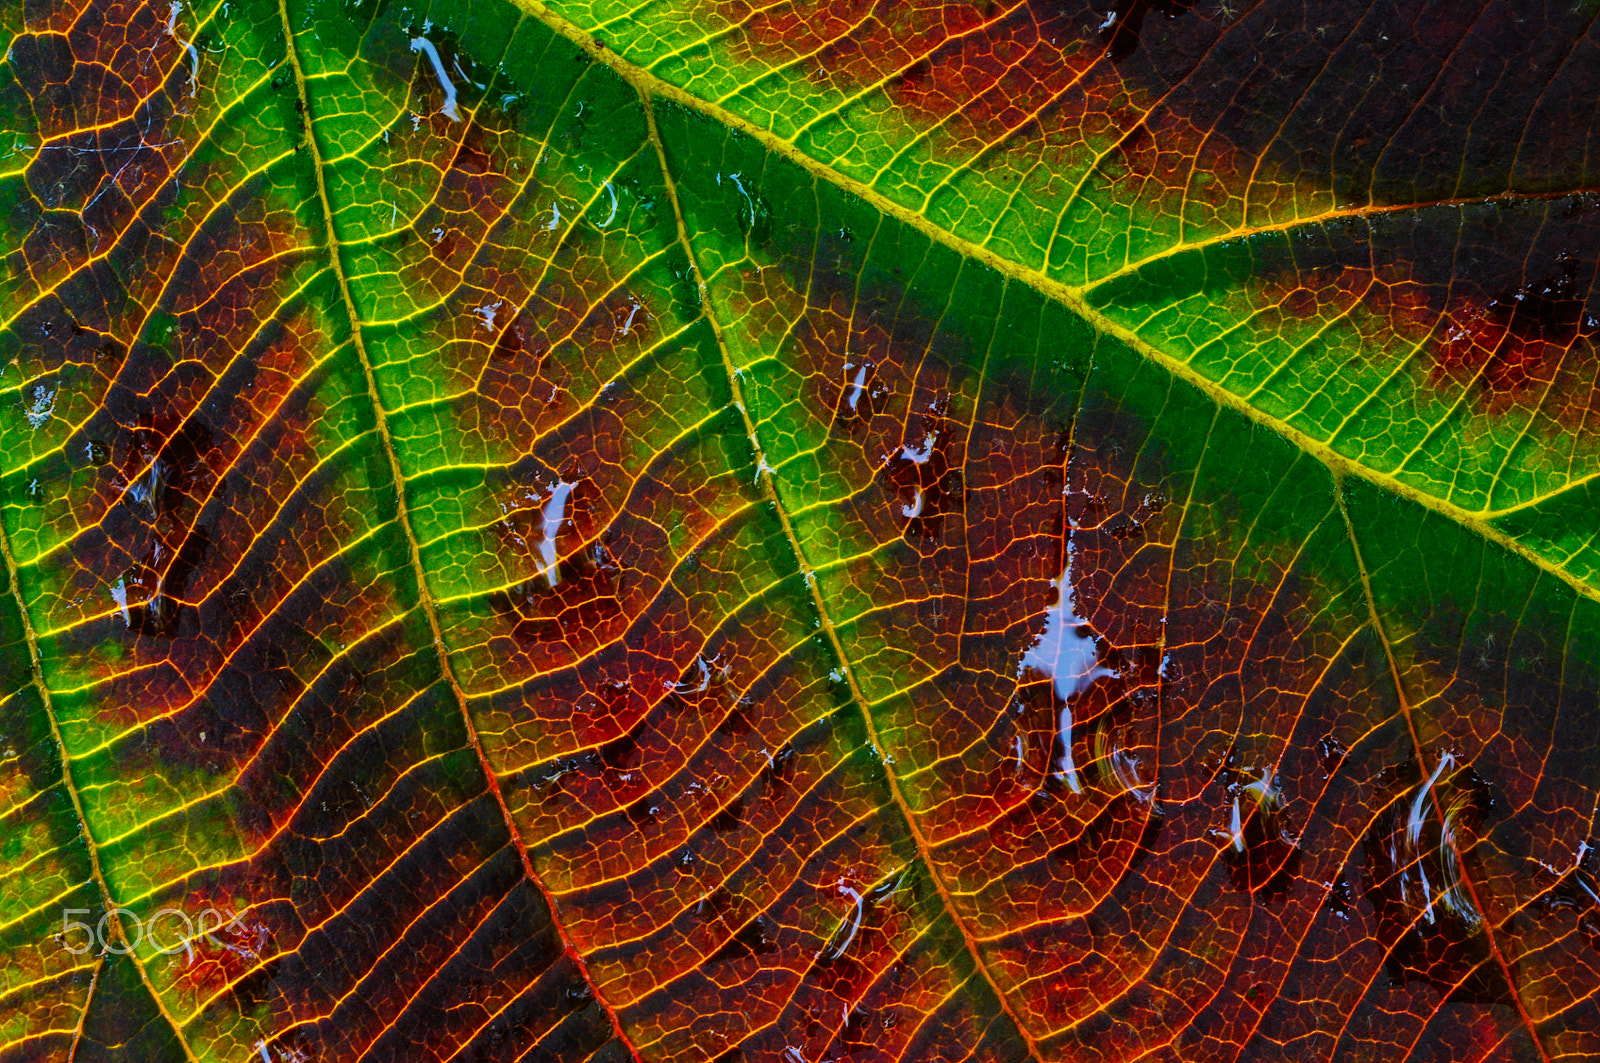 AF Zoom-Nikkor 75-300mm f/4.5-5.6 sample photo. Leaf detail photography